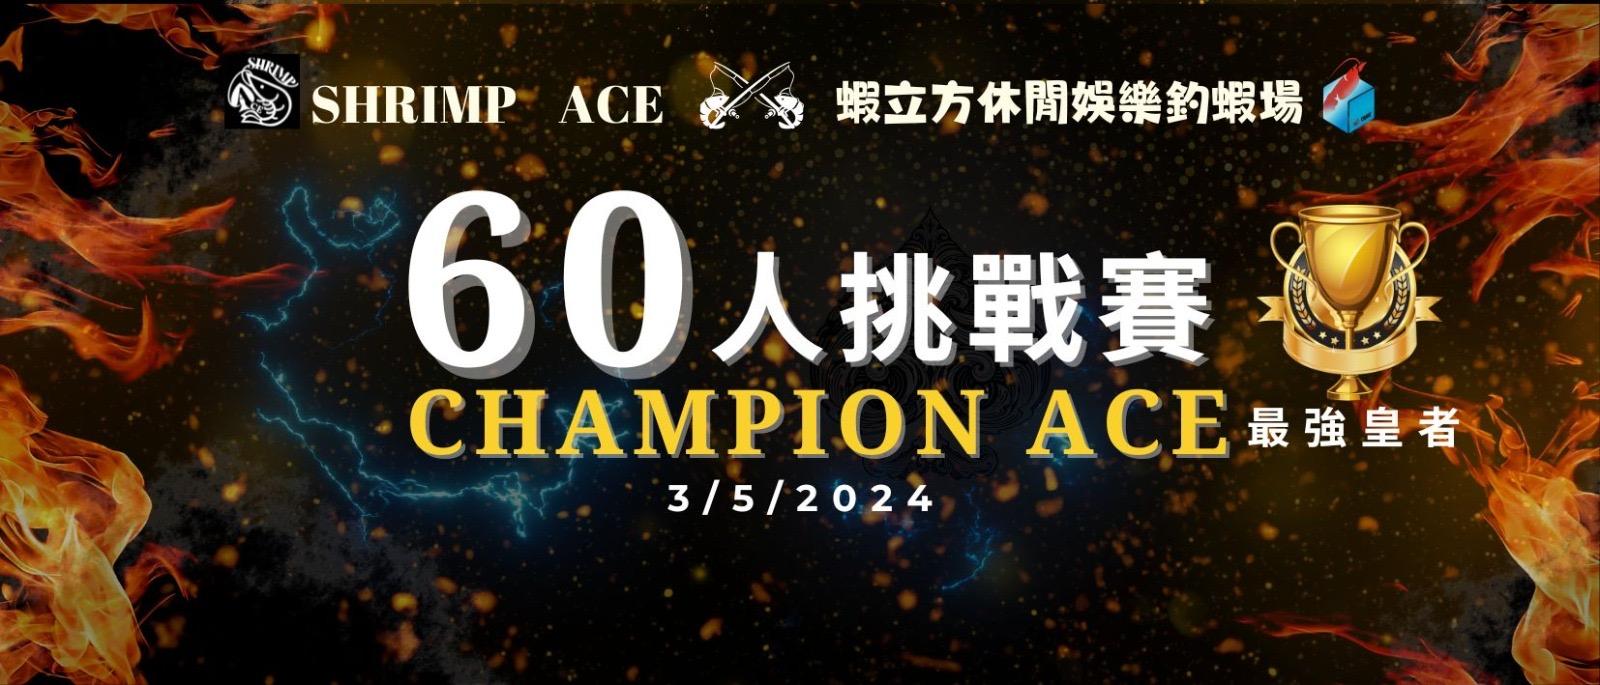 Champion Ace 個人挑戰賽♠️